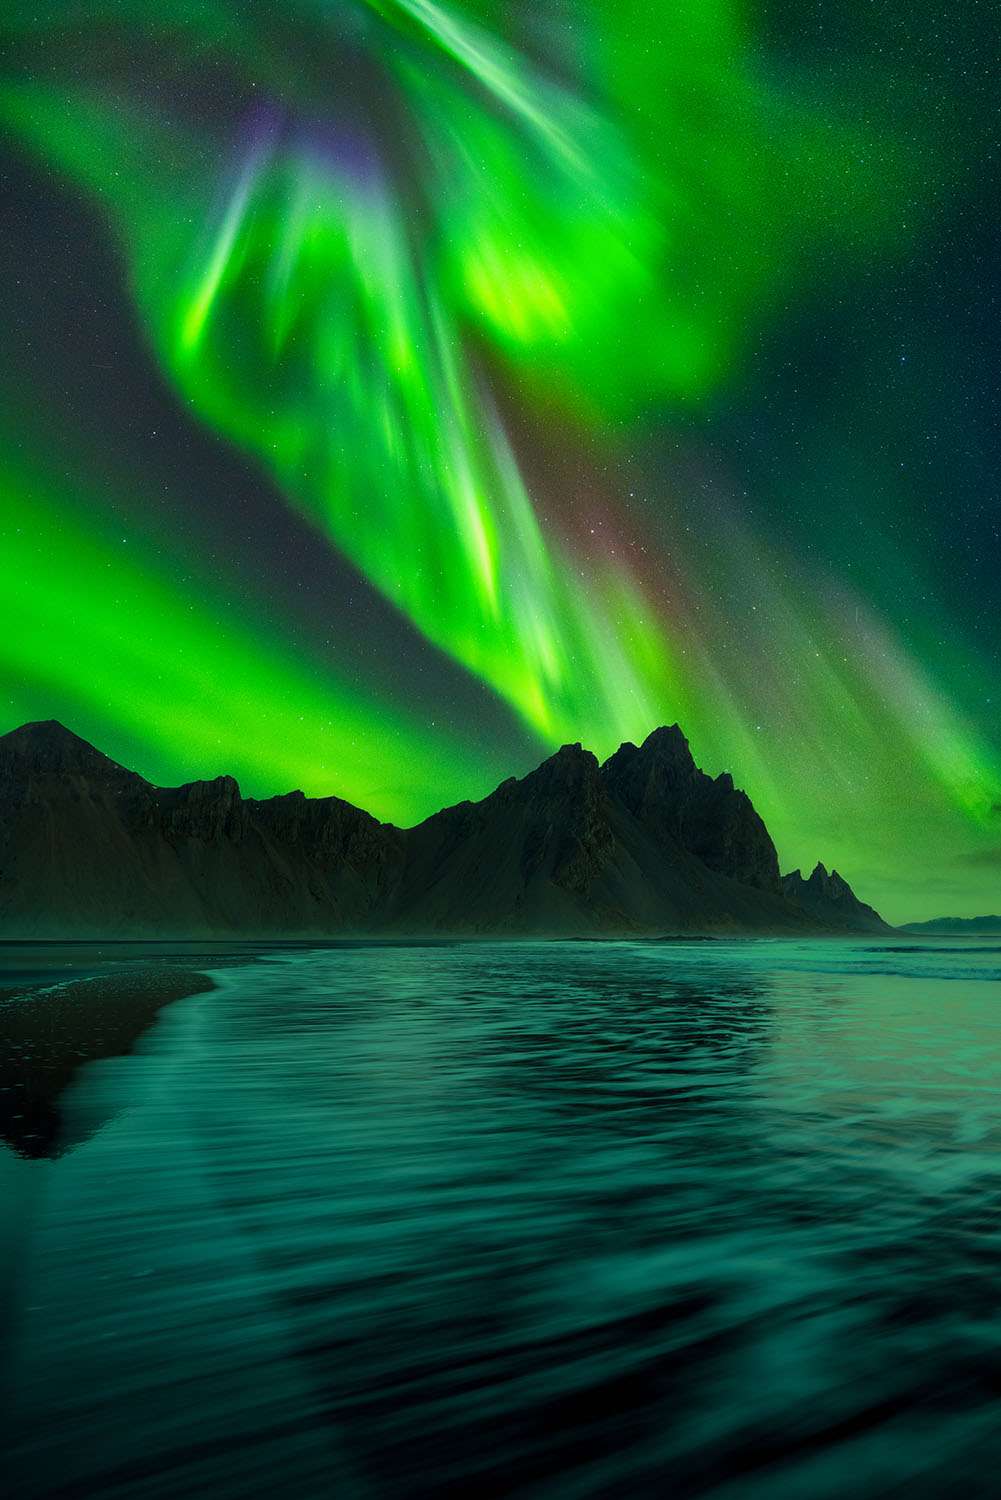 Le spectacle saisissant des aurores boréales. © Delil Geyik, tous droits réservés 